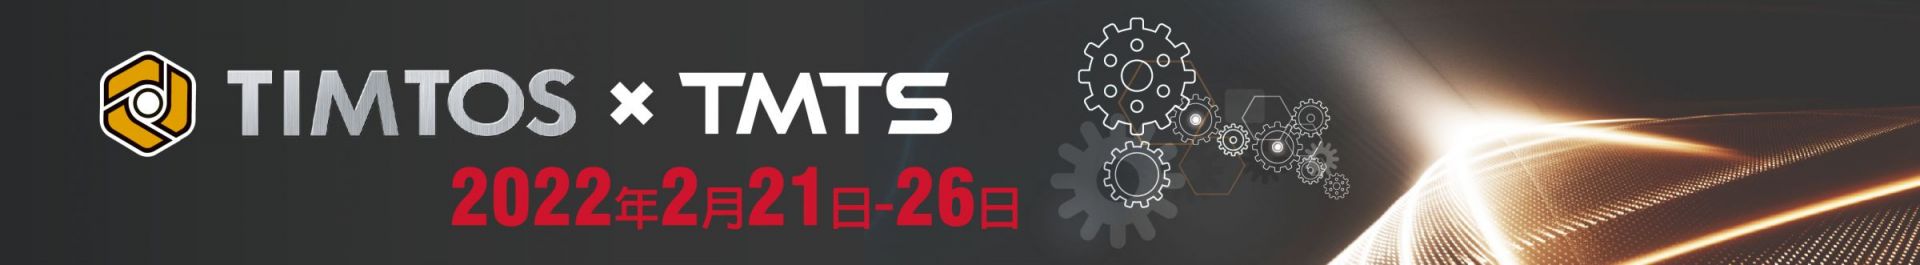 TIMTOS x TMTS 2022 台北 國際 工具 機 展